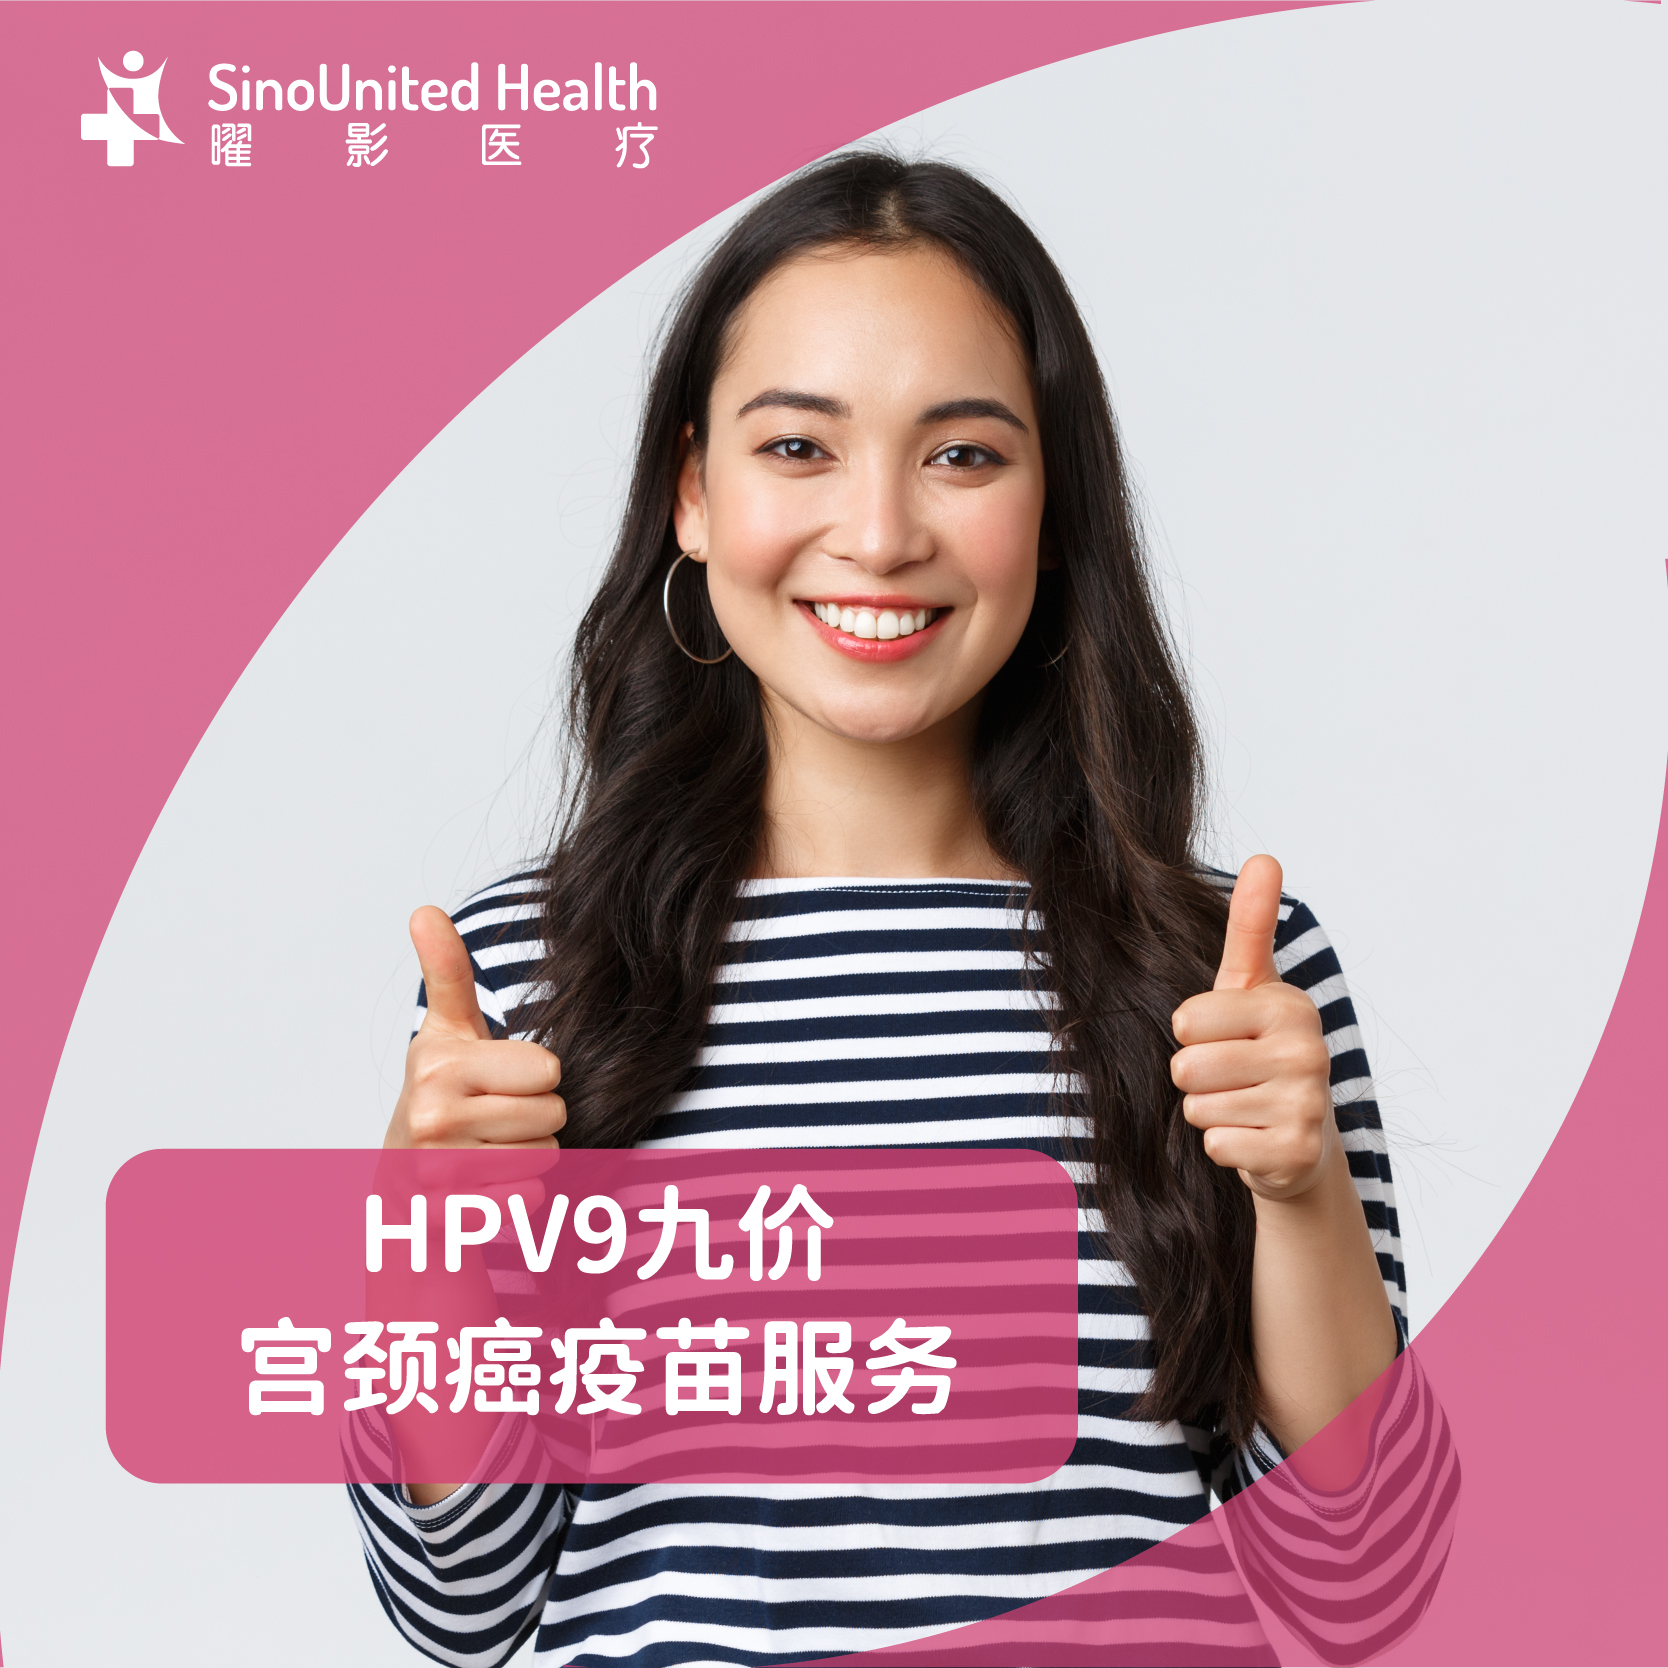 HPV9九价宫颈癌疫苗服务